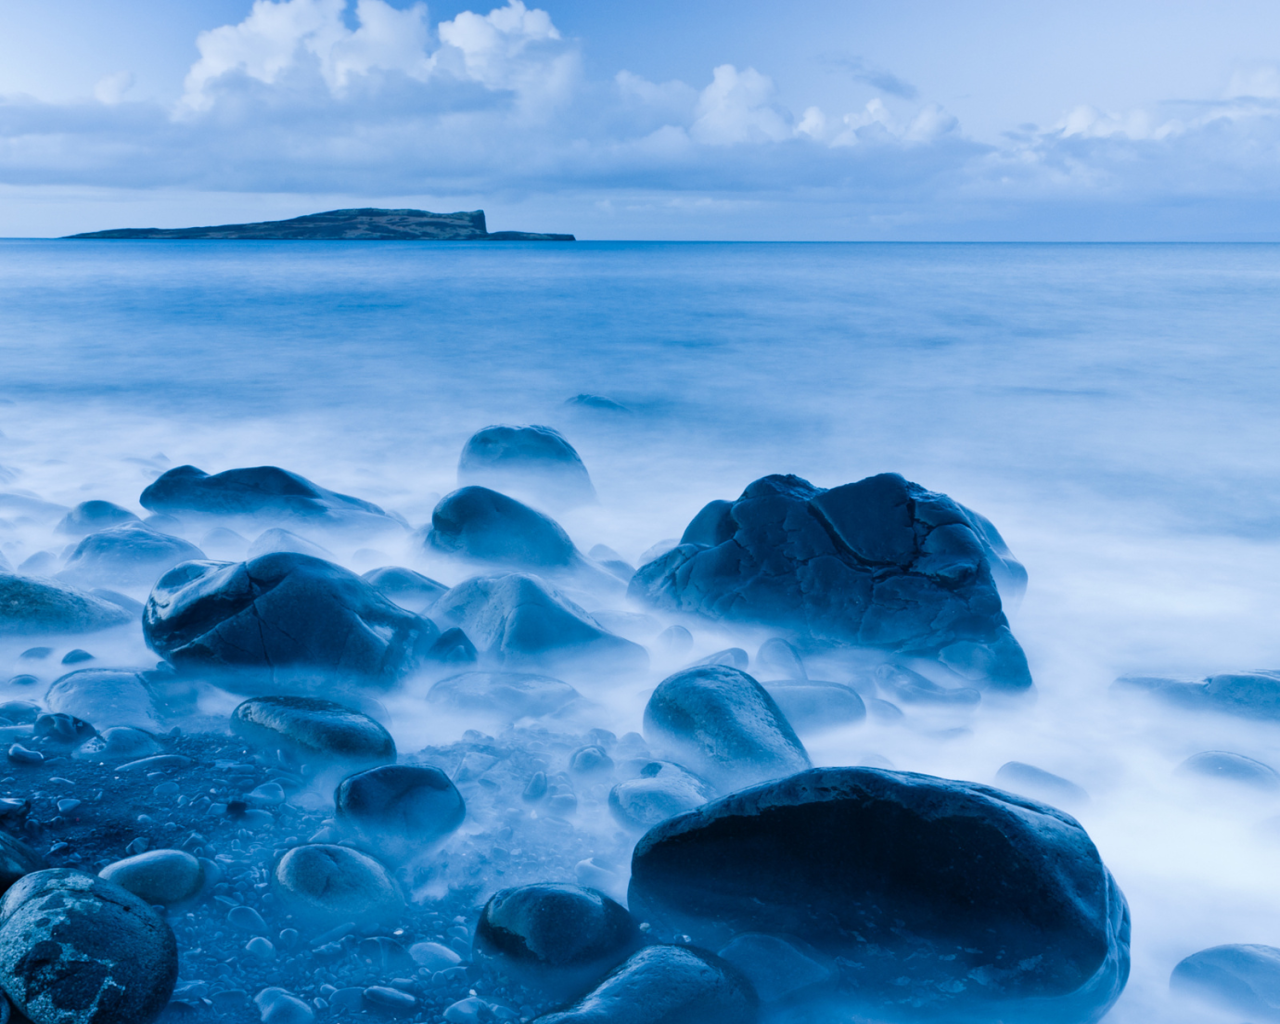 The blue sea off the coast of Scotland